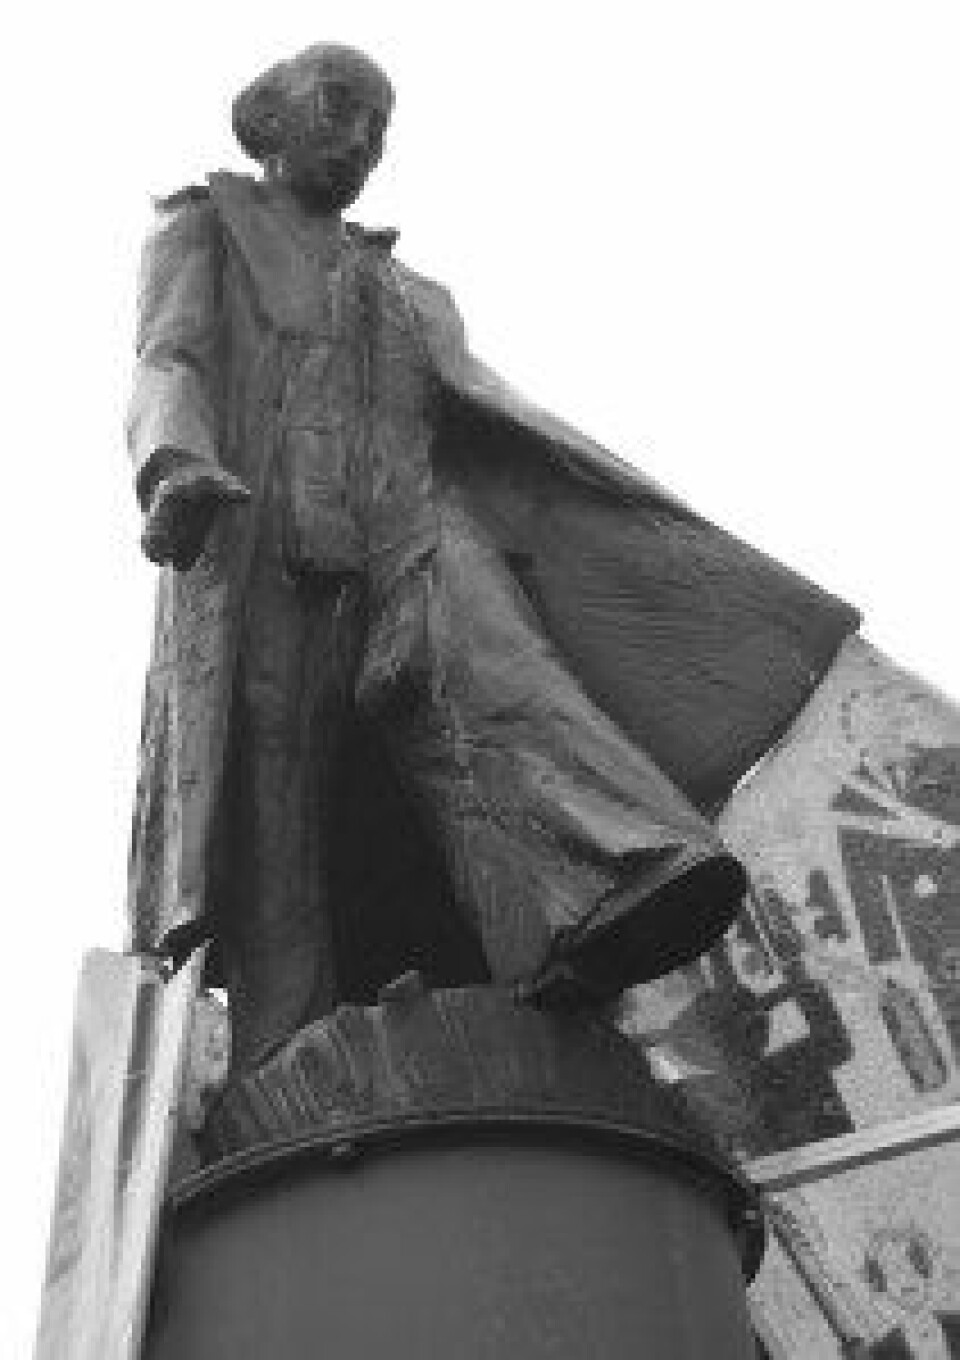 Statuen av Jonas reist i Mönchengladbach. (Foto: Sigurd Hverven)